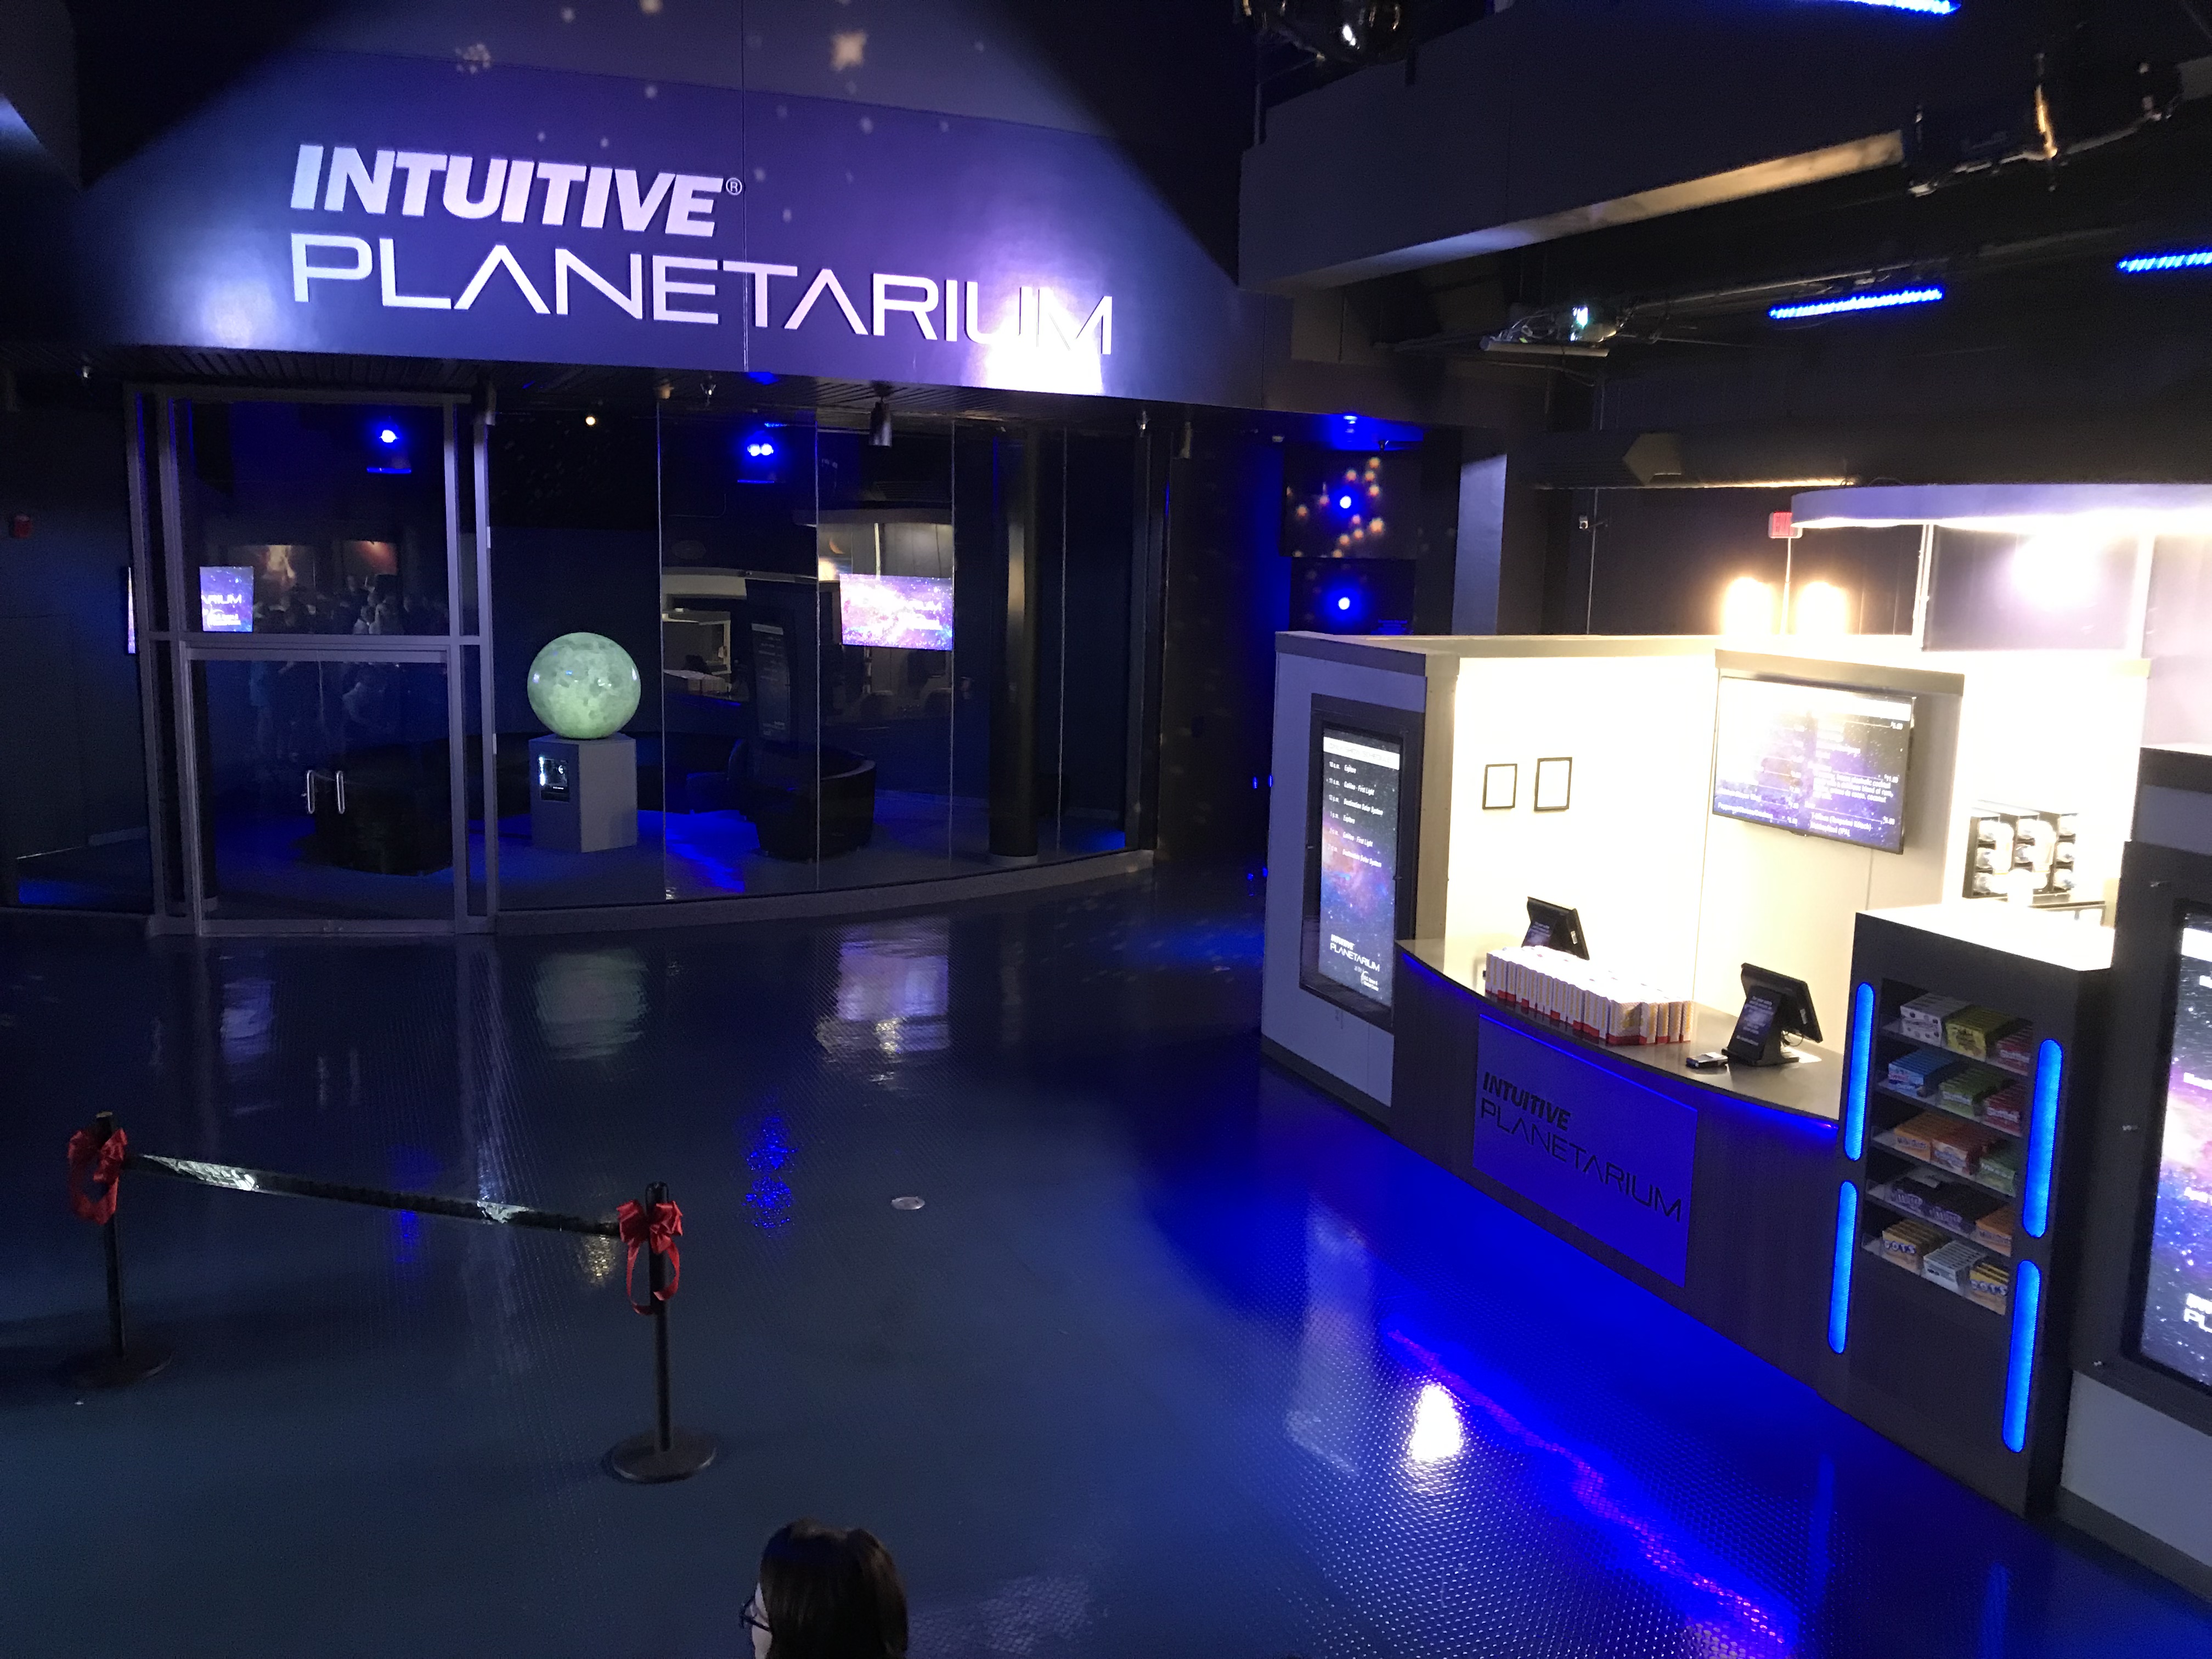 INTUITIVE® Planetarium